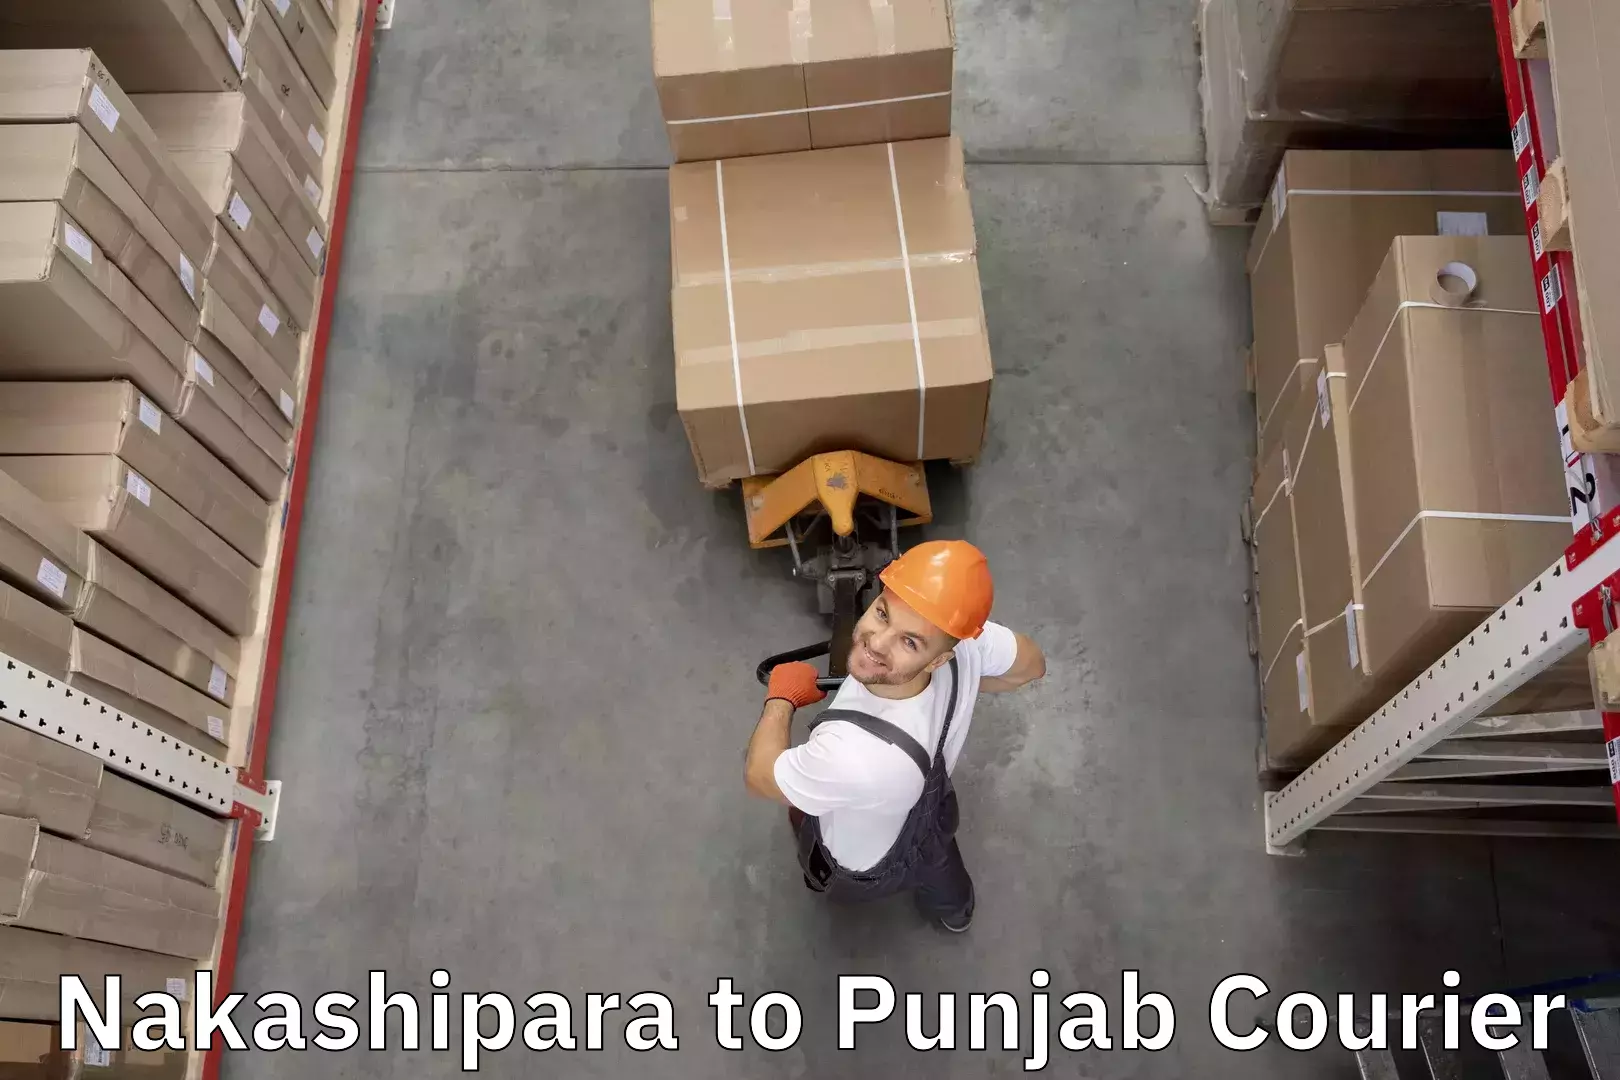 Baggage courier service Nakashipara to Amritsar